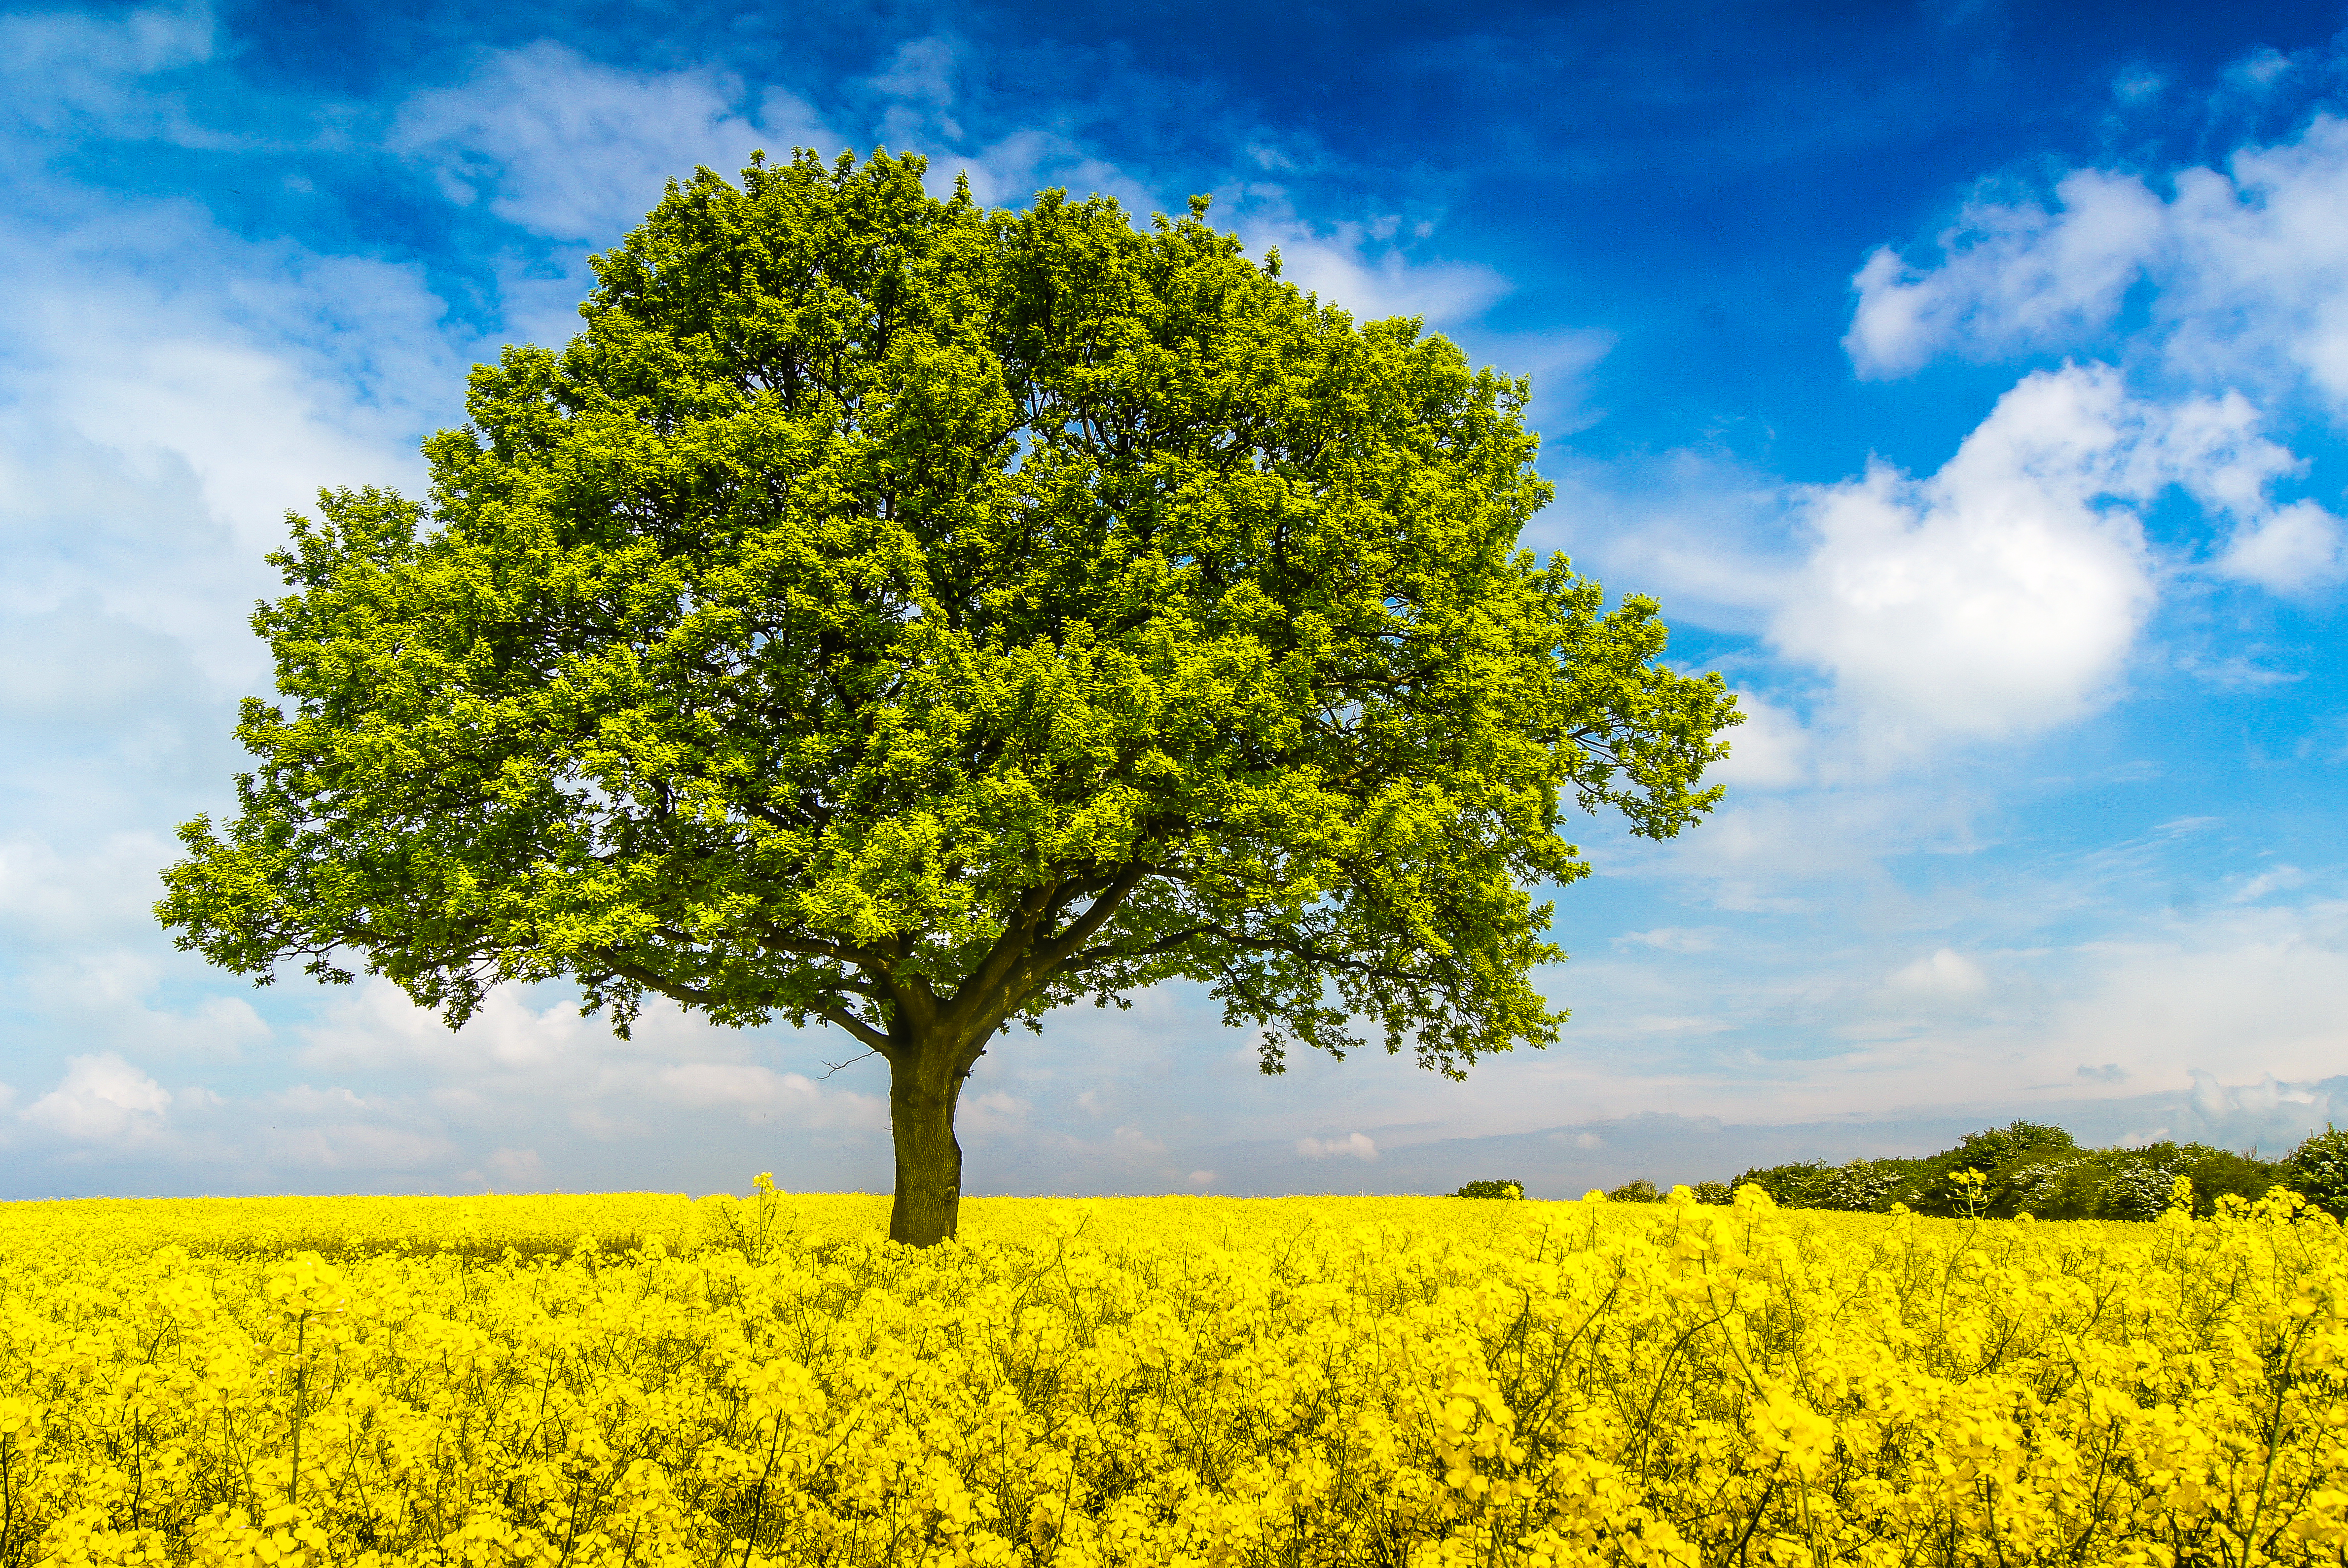 Бесплатное фото На телефон поле, цветы, дерево обои качественные